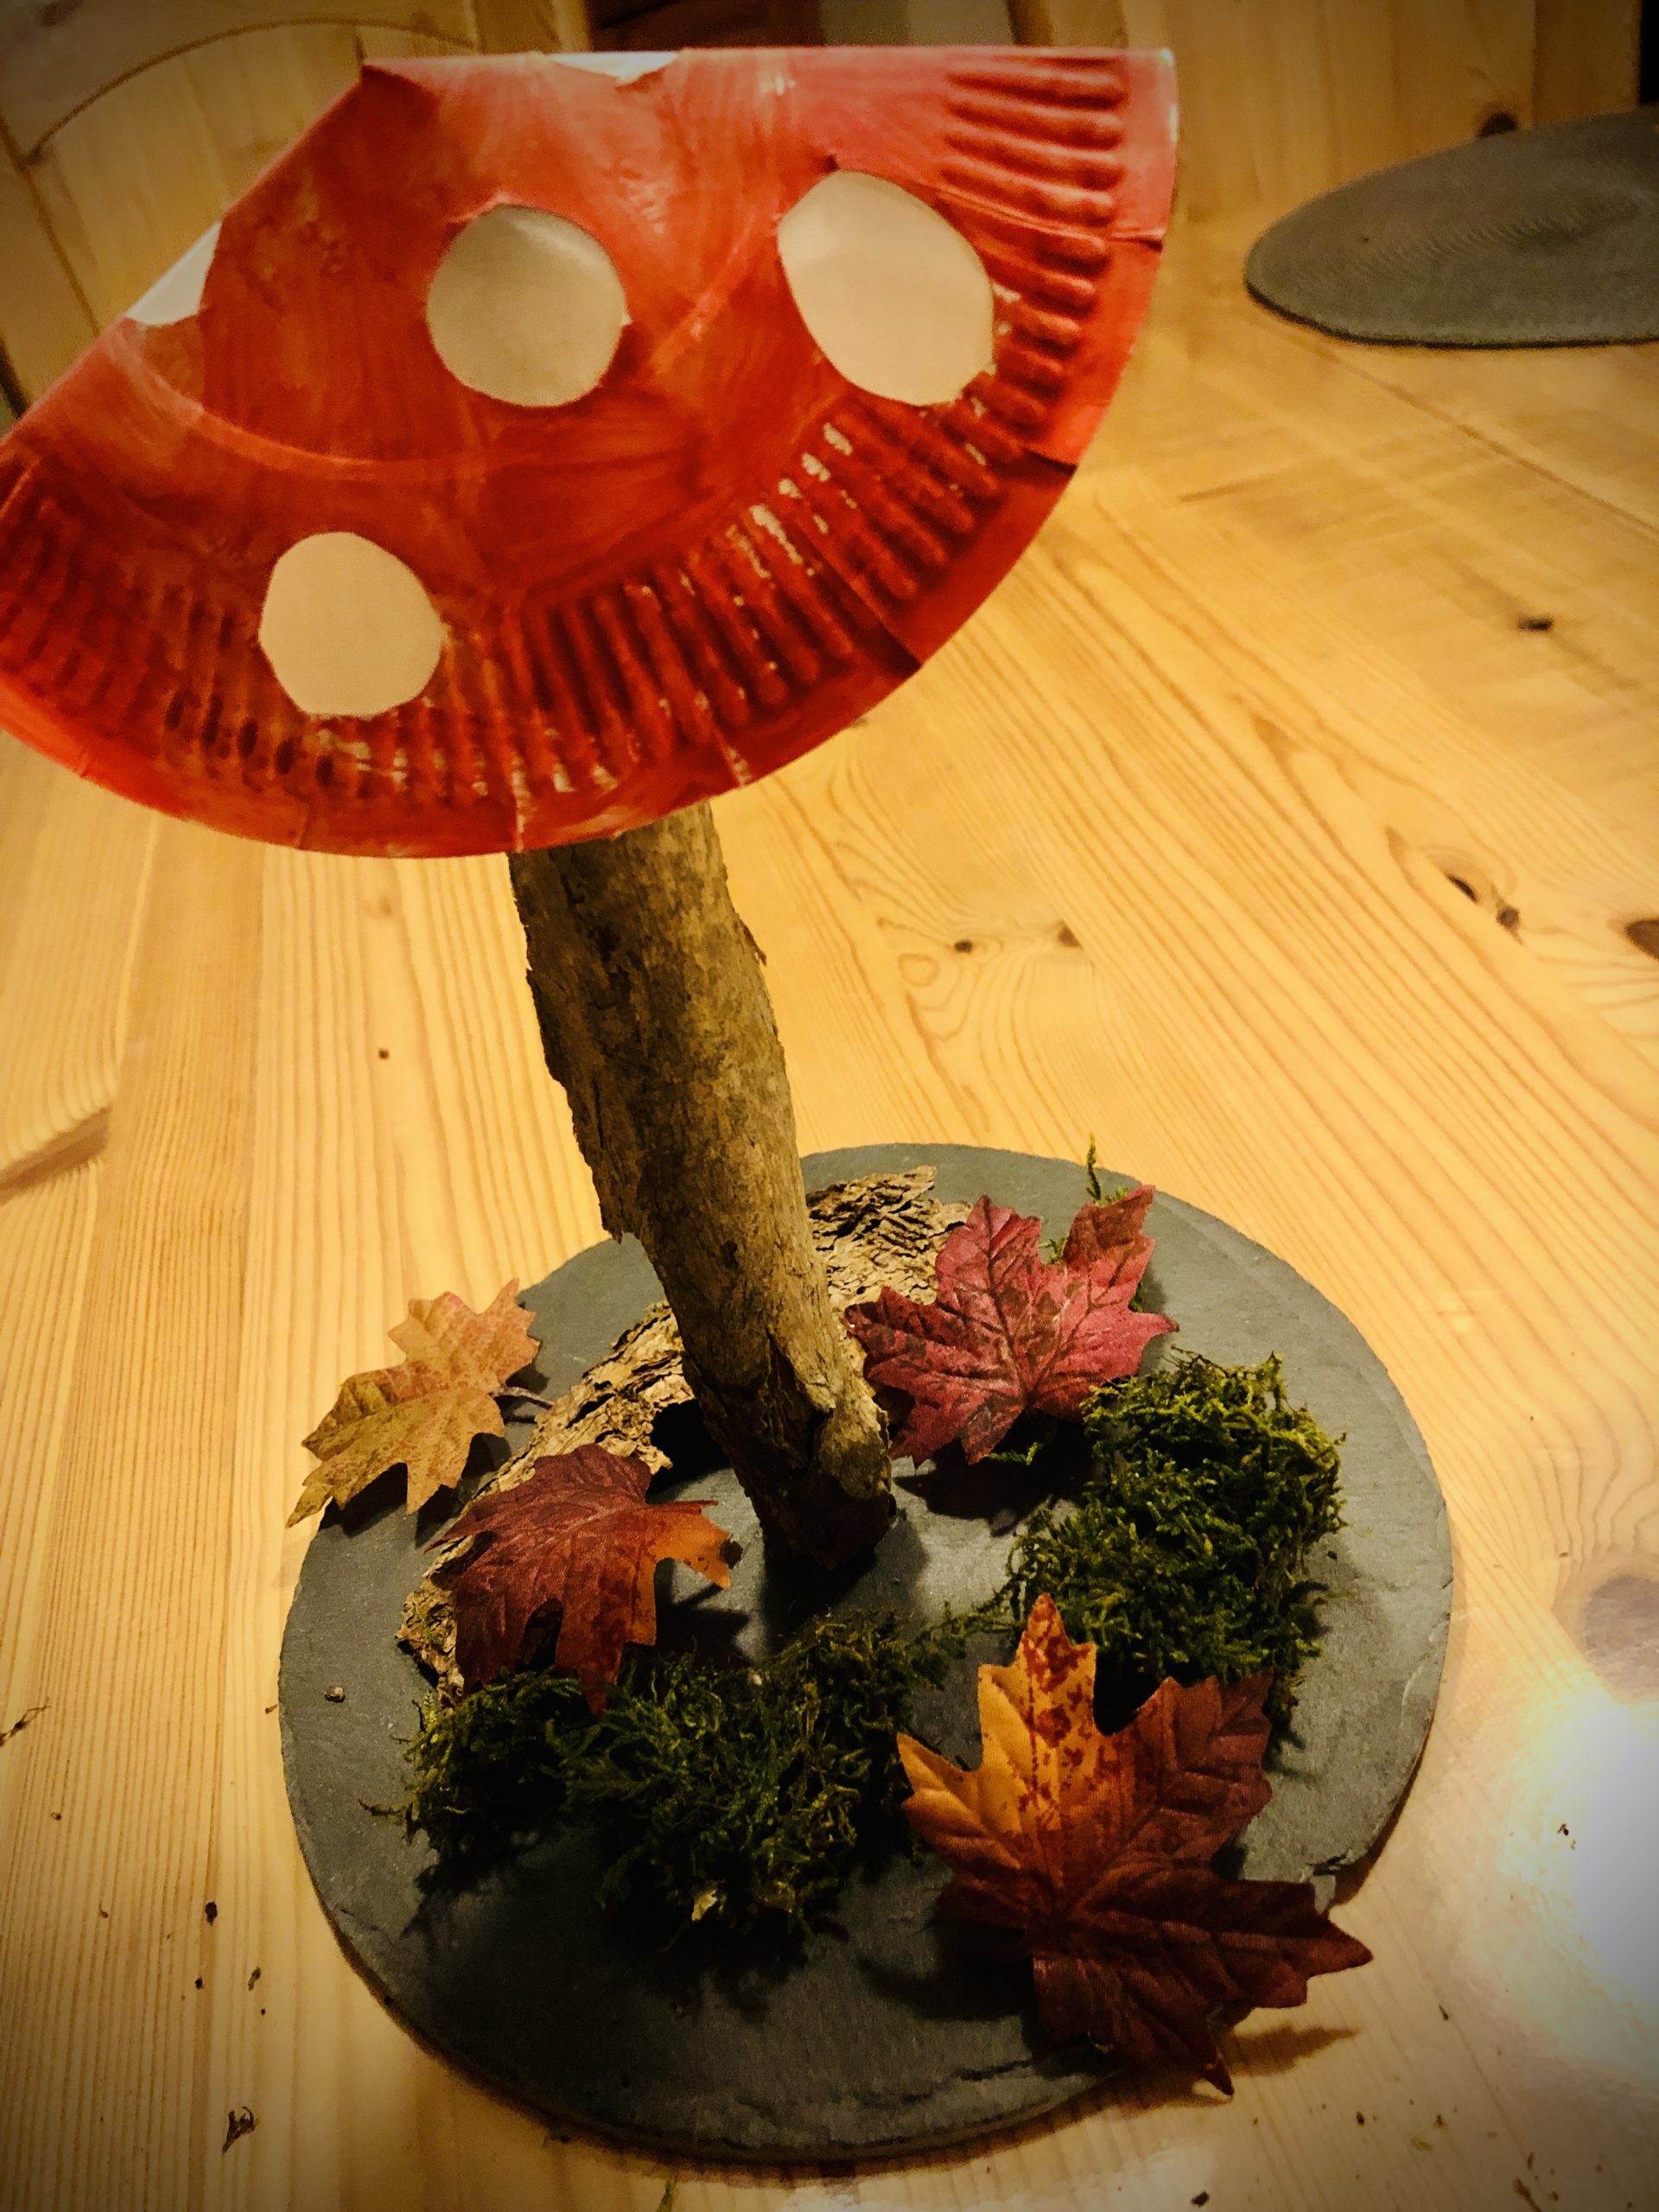 Bild zum Schritt 14 für das Bastel- und DIY-Abenteuer für Kinder: 'Abschließend dekoriert den Pilz mit Moos, Blättern und Rindenstücken.'